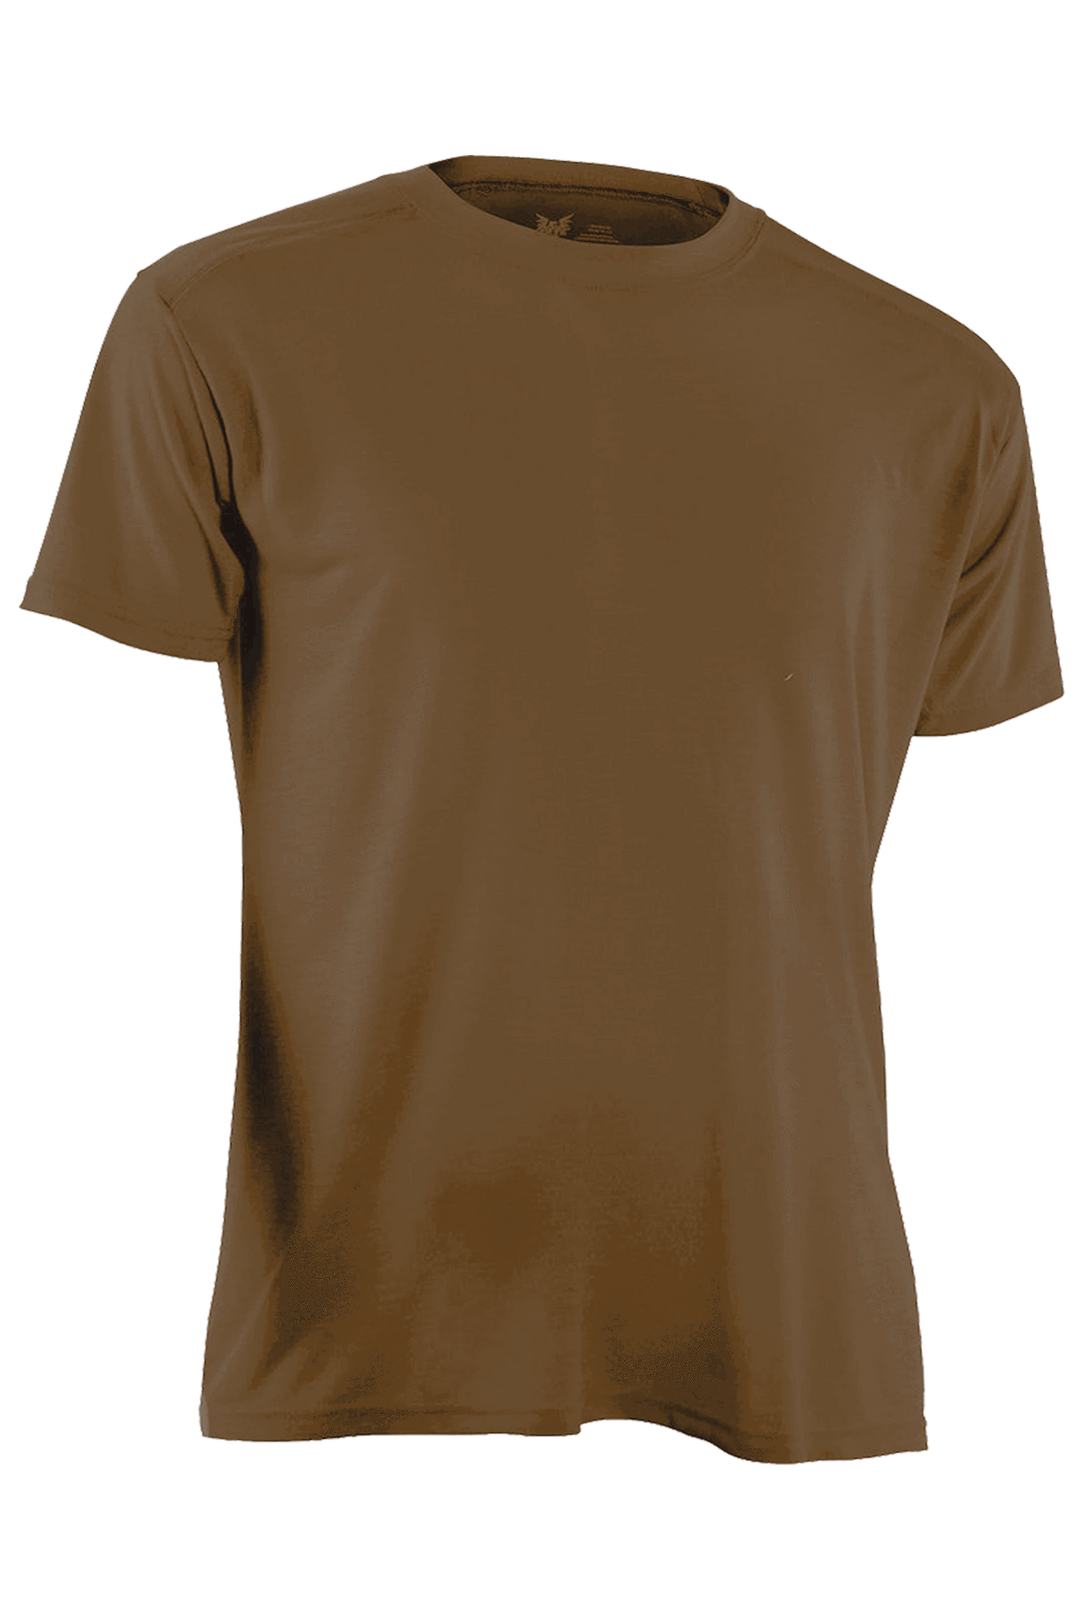 Apparel - Tops - Base Layer - DRIFIRE Military Ultra-Lightweight FR Short Sleeve T-Shirt